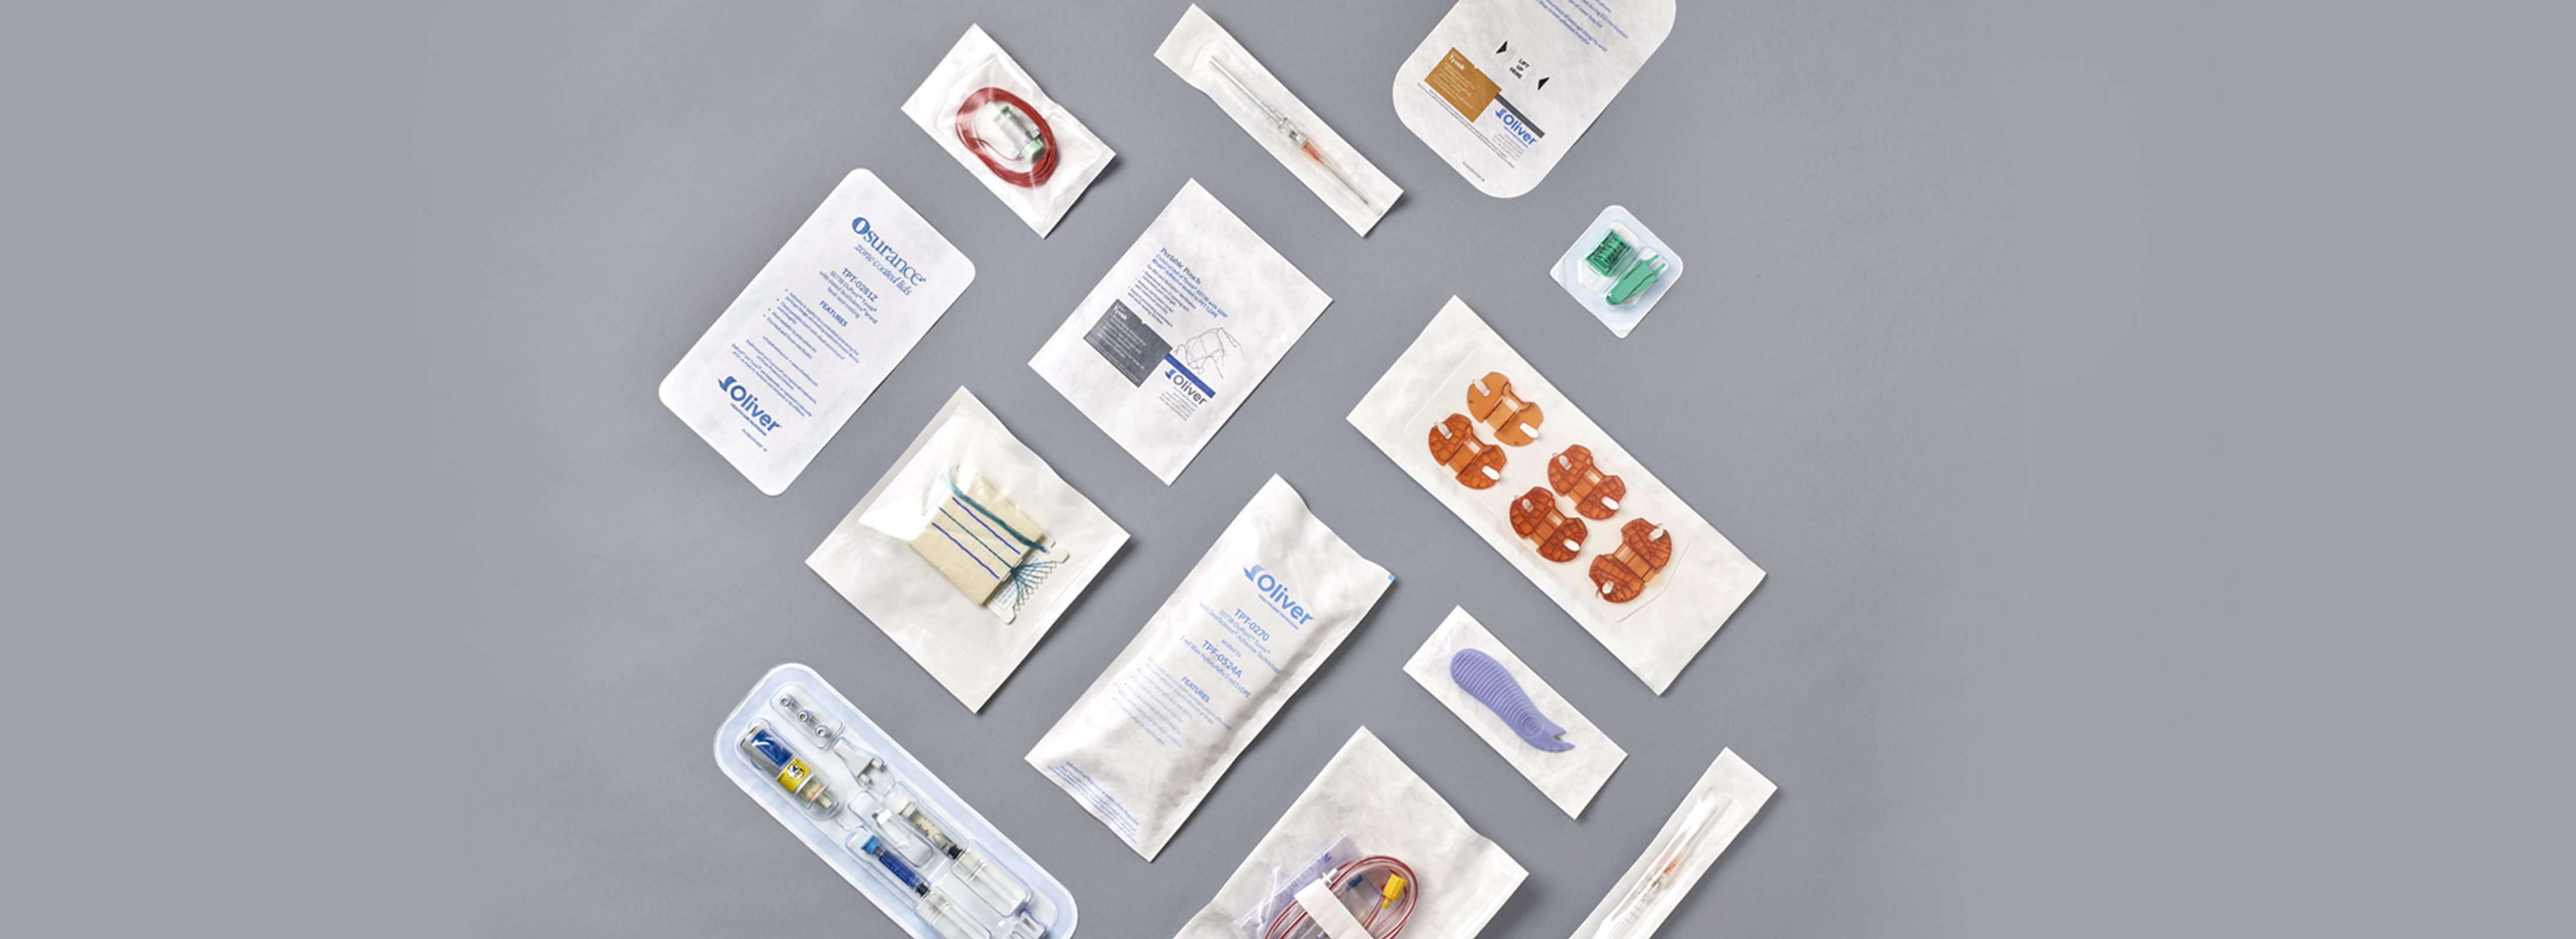 ヒート・シール可能なヘルスケア・パッケージング用接着剤 | Oliver Healthcare Packaging